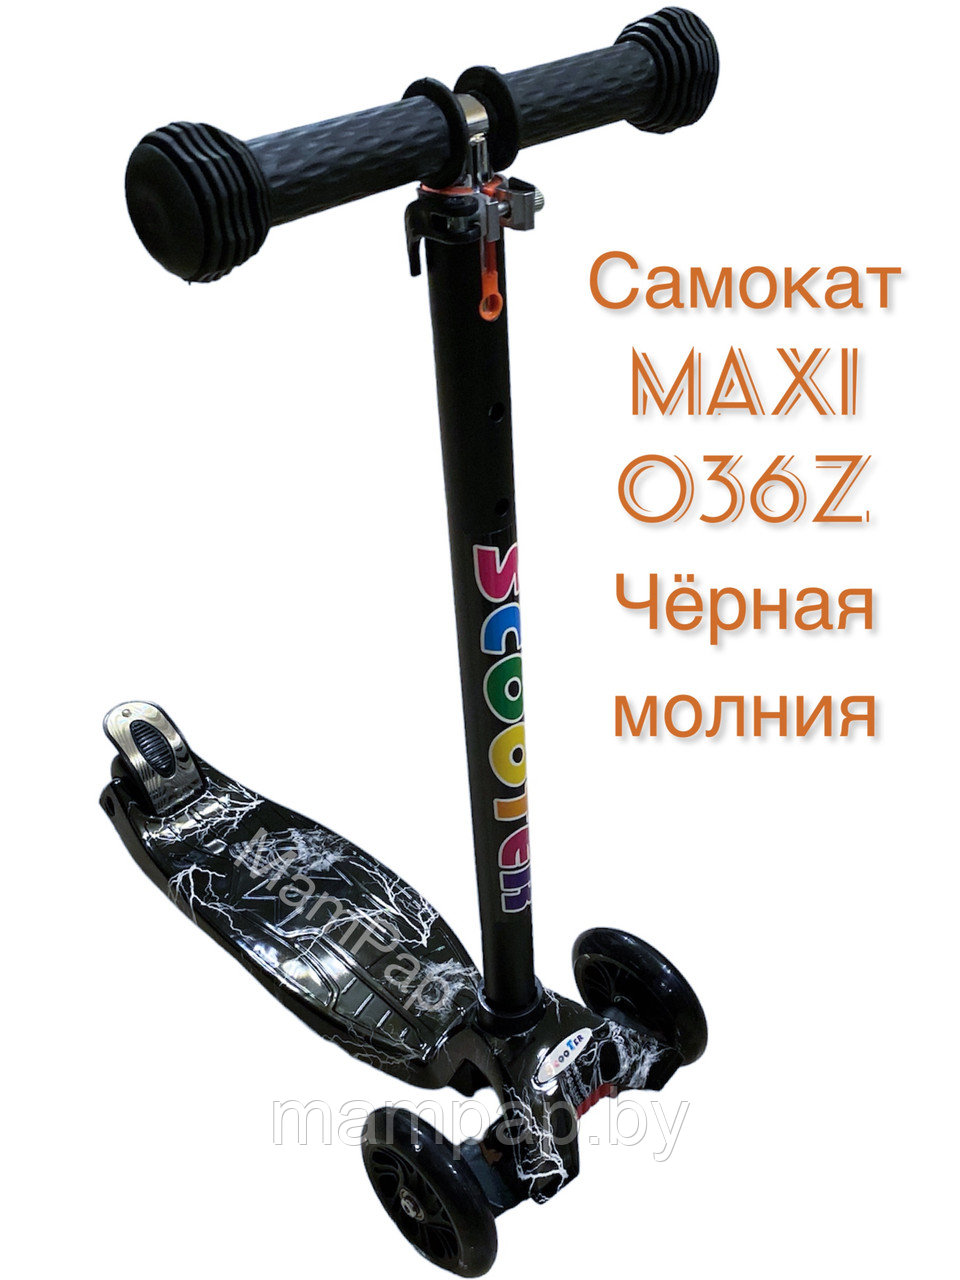 Самокат детский трехколесный MAXI SCOOTER 036Z чёрная молния для мальчиков до 60 кг